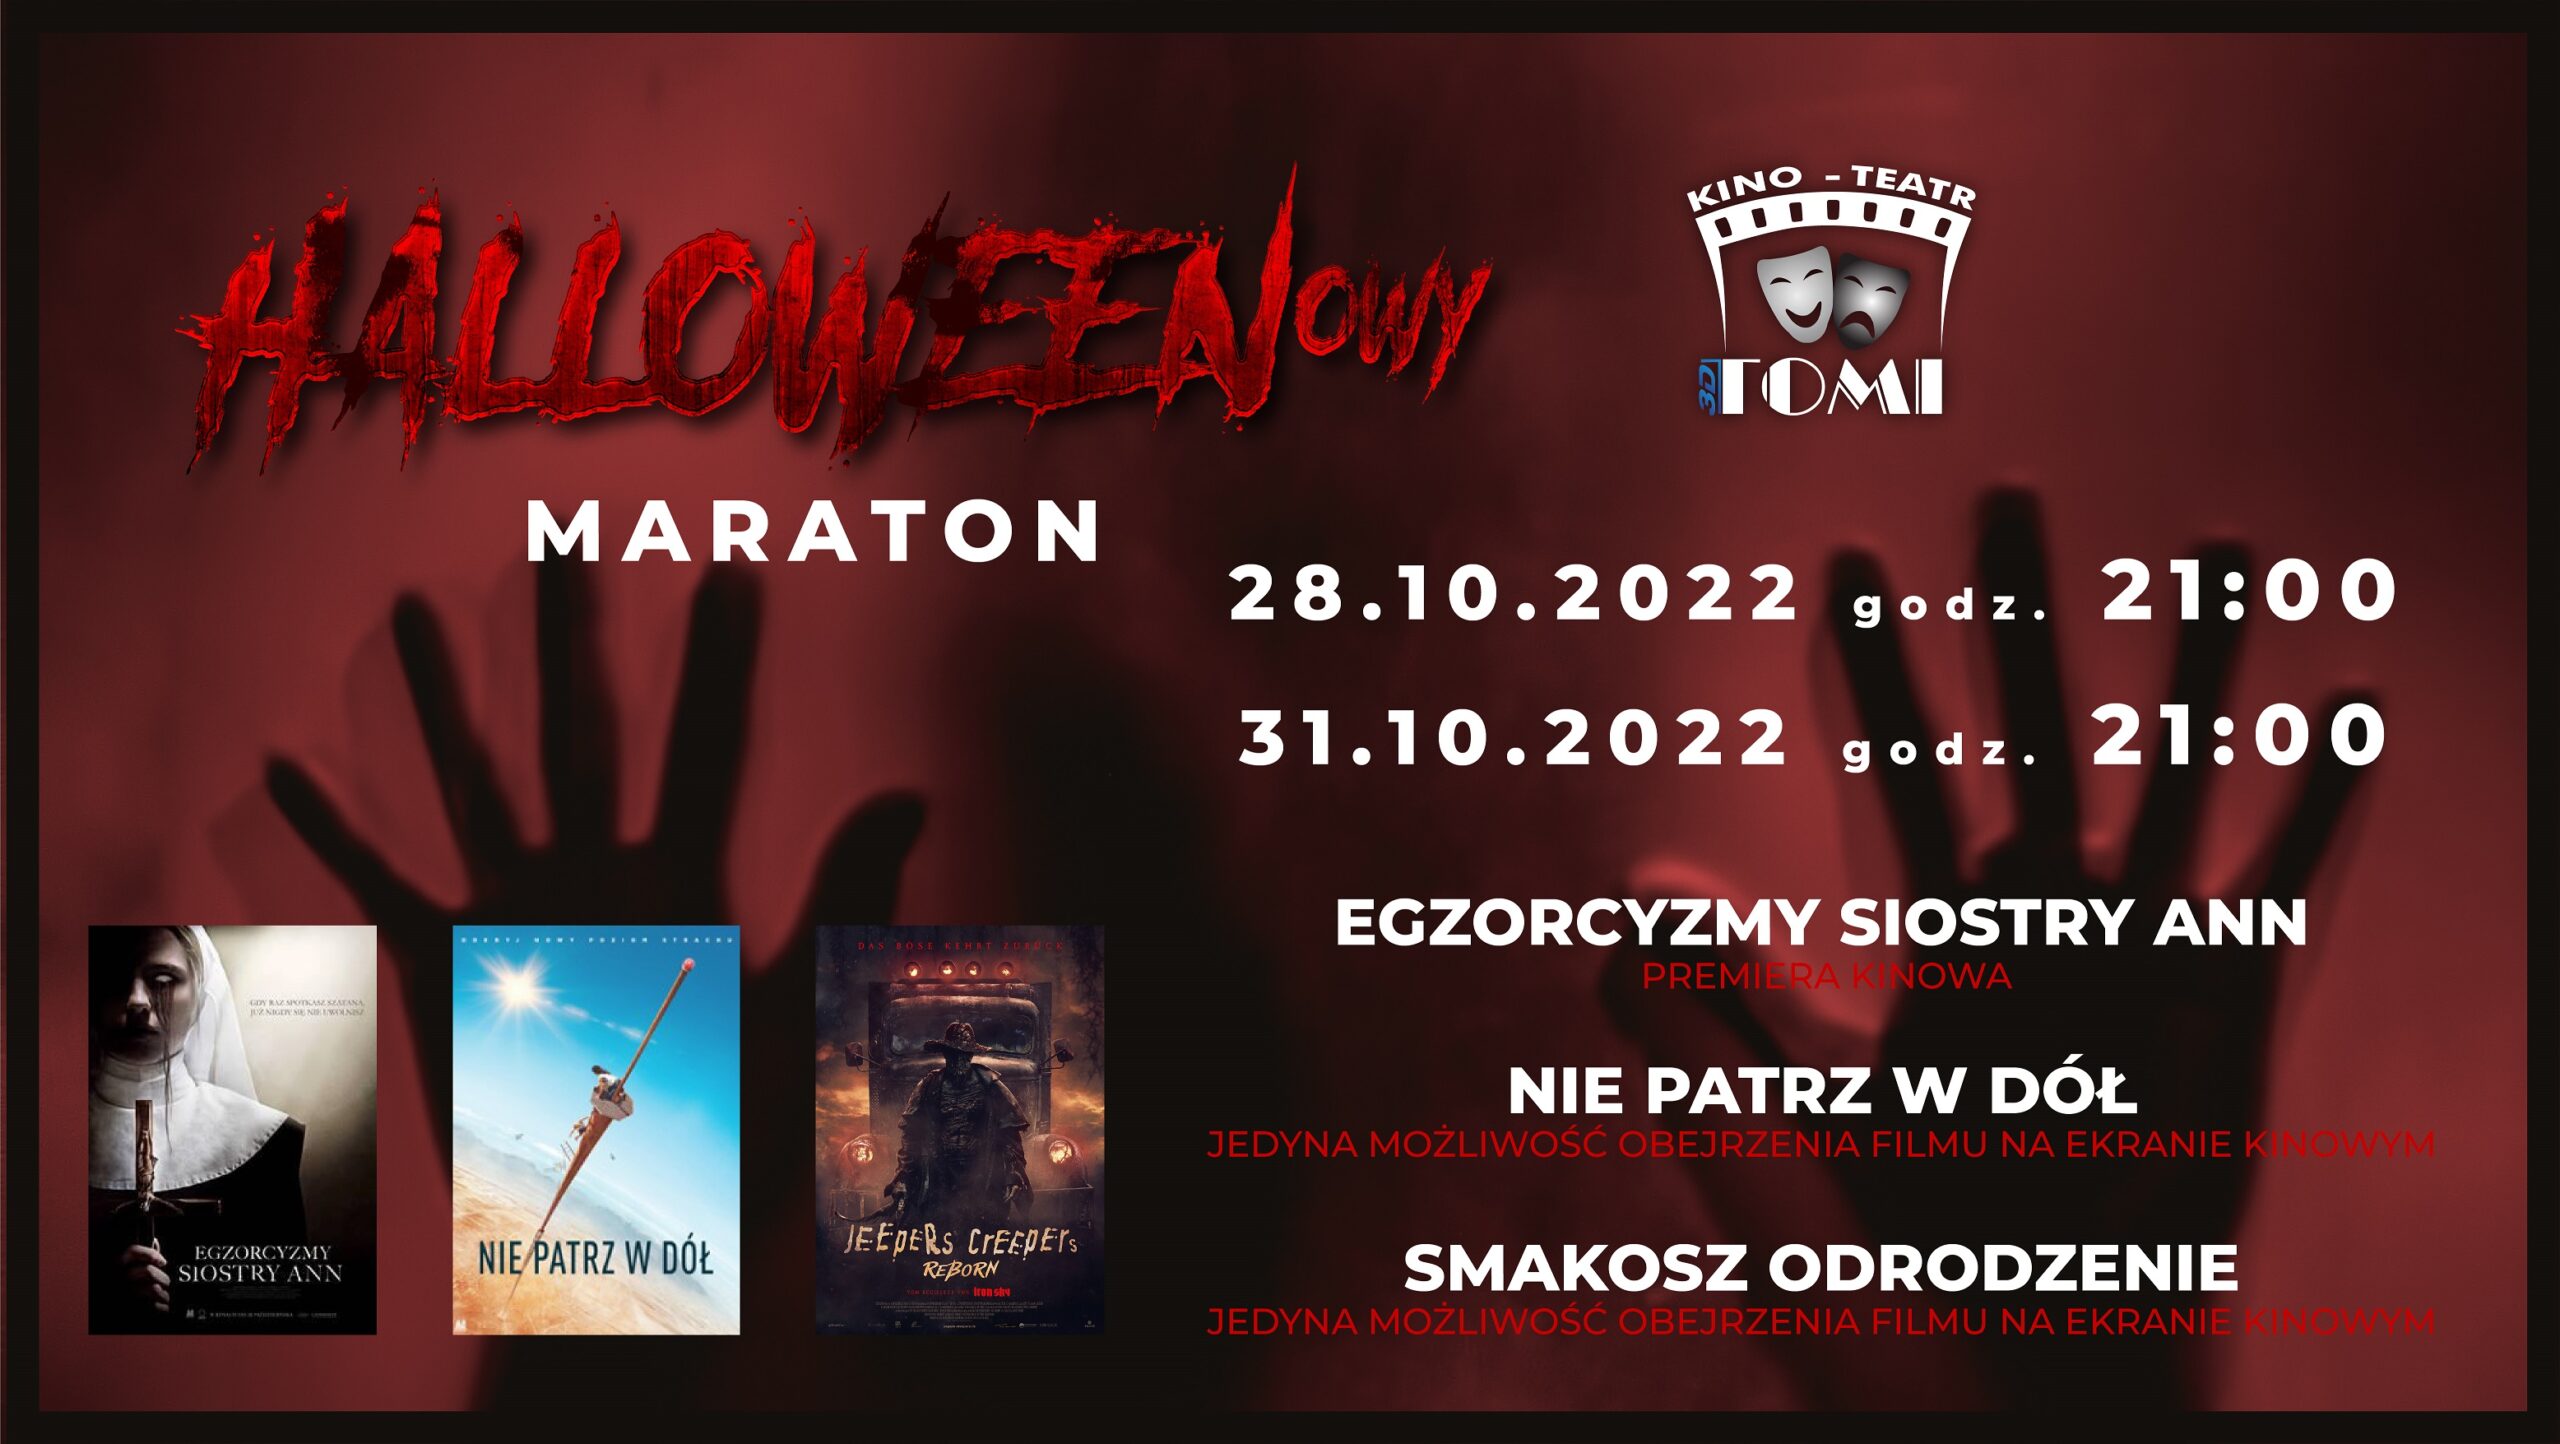 Maraton Halloween Kino TOMI – 28.10 i 31.10, start 21.00